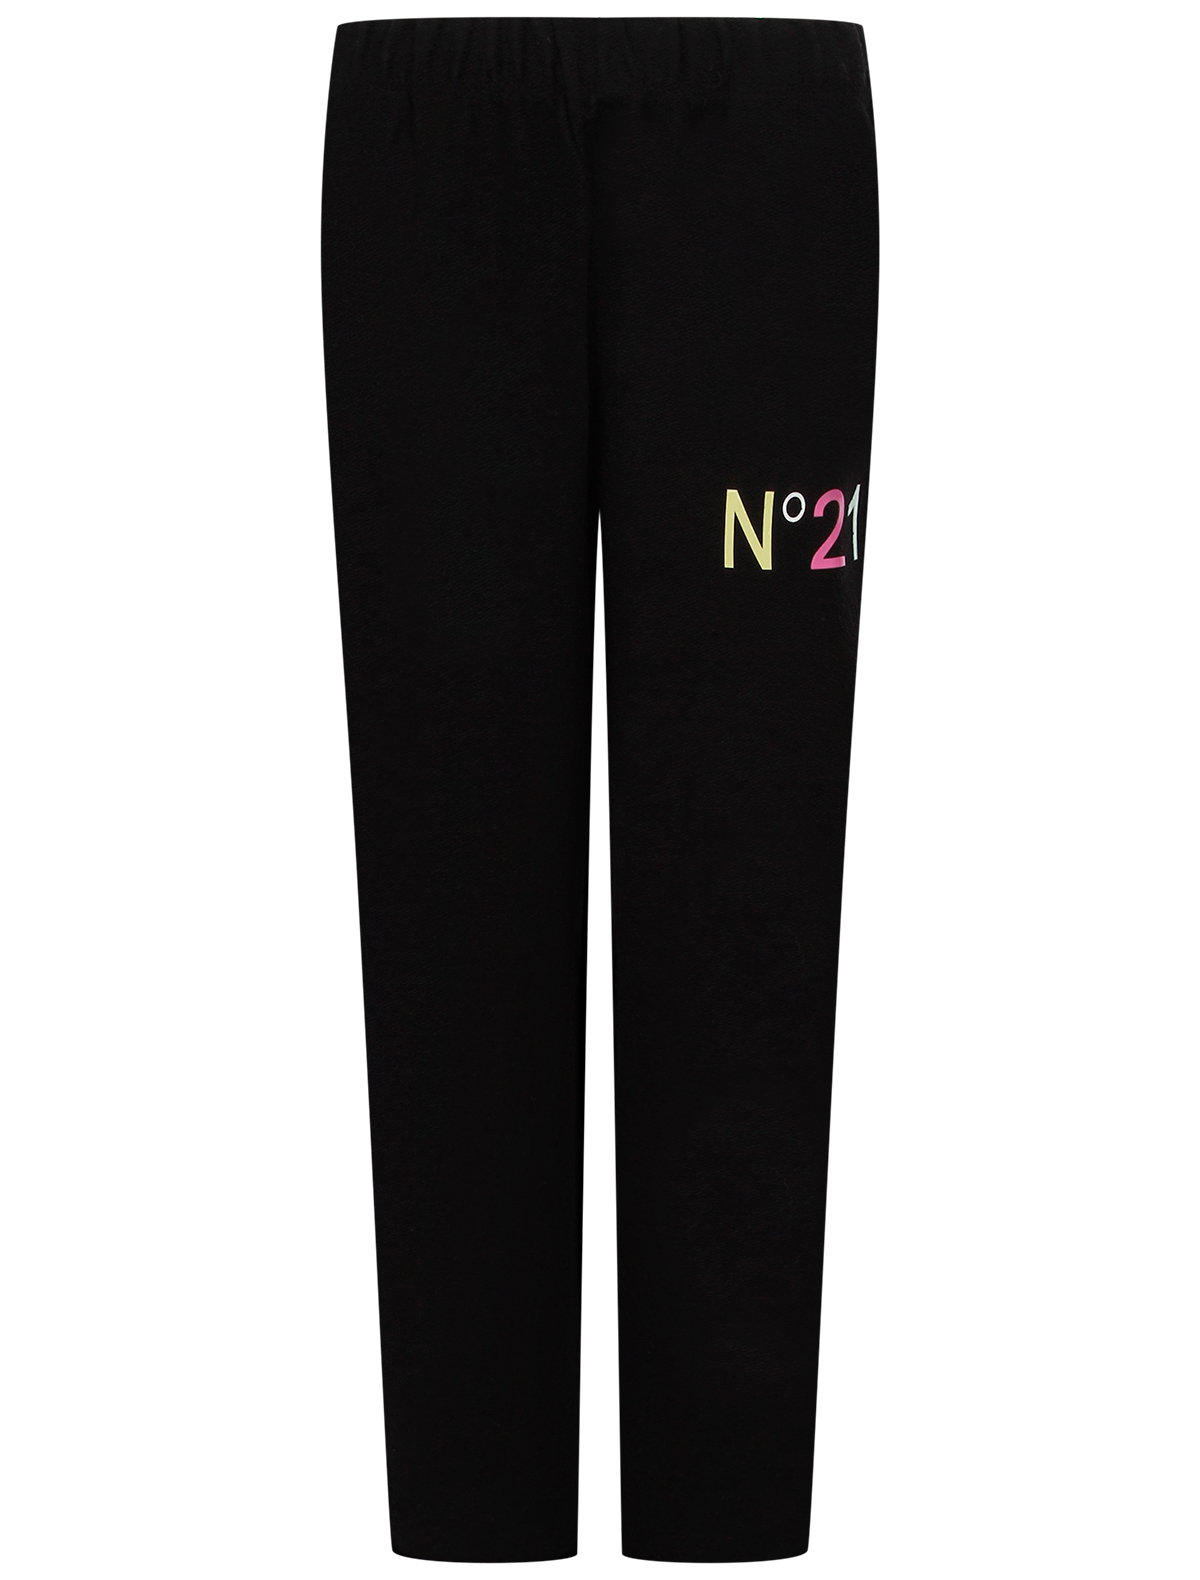 спортивные брюки n21 для девочки, черные